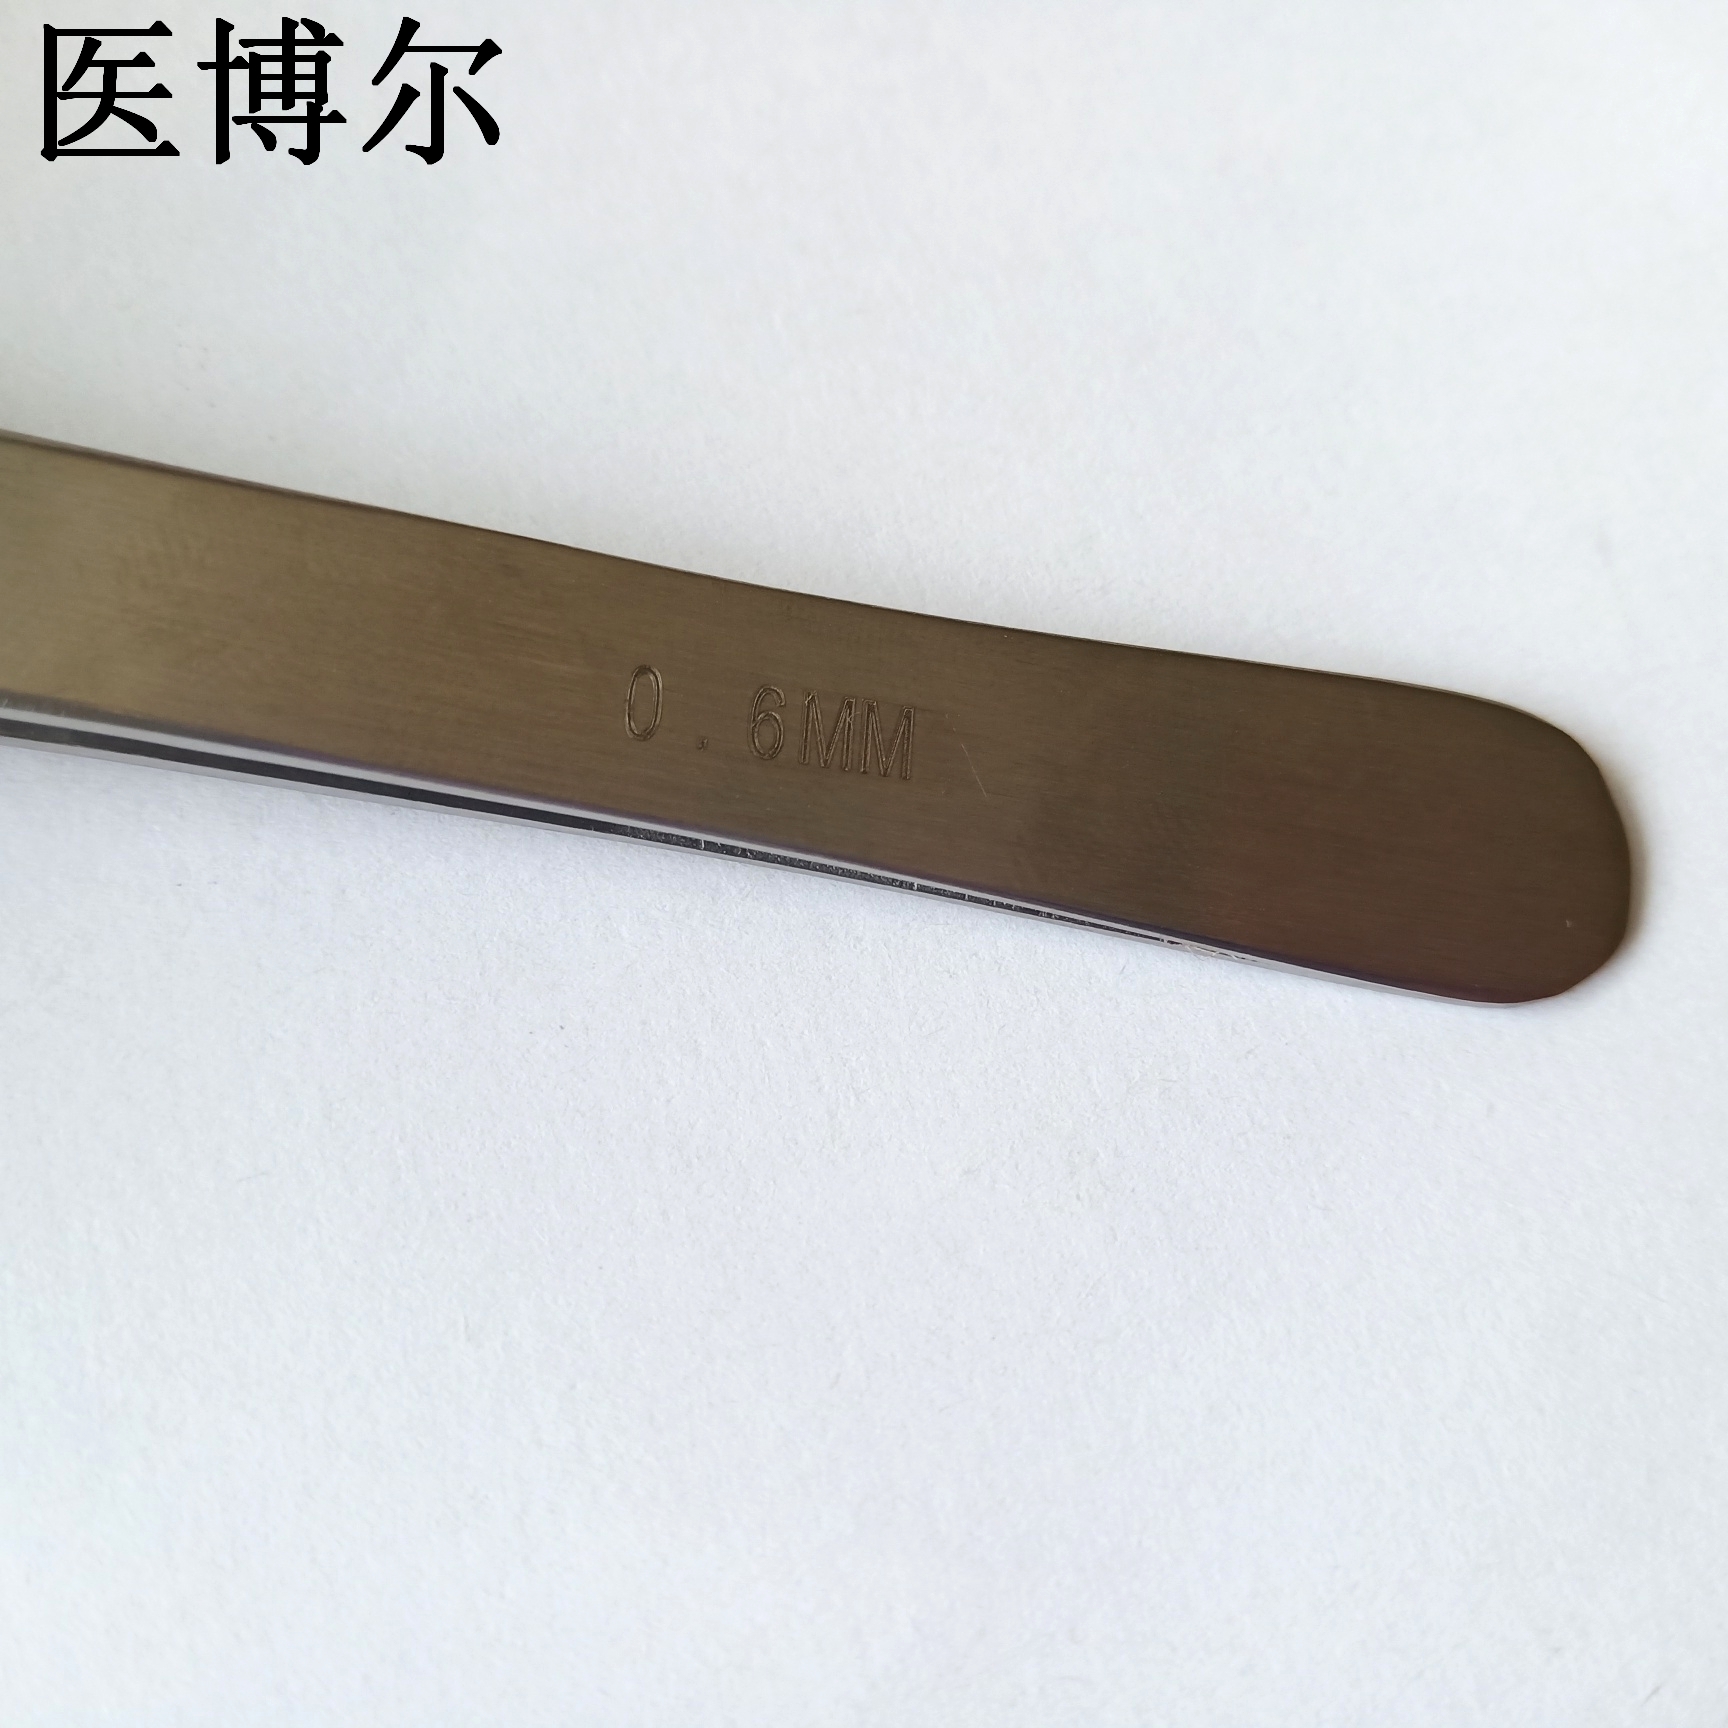 14cm整形镊0 (1)_看图王.jpg